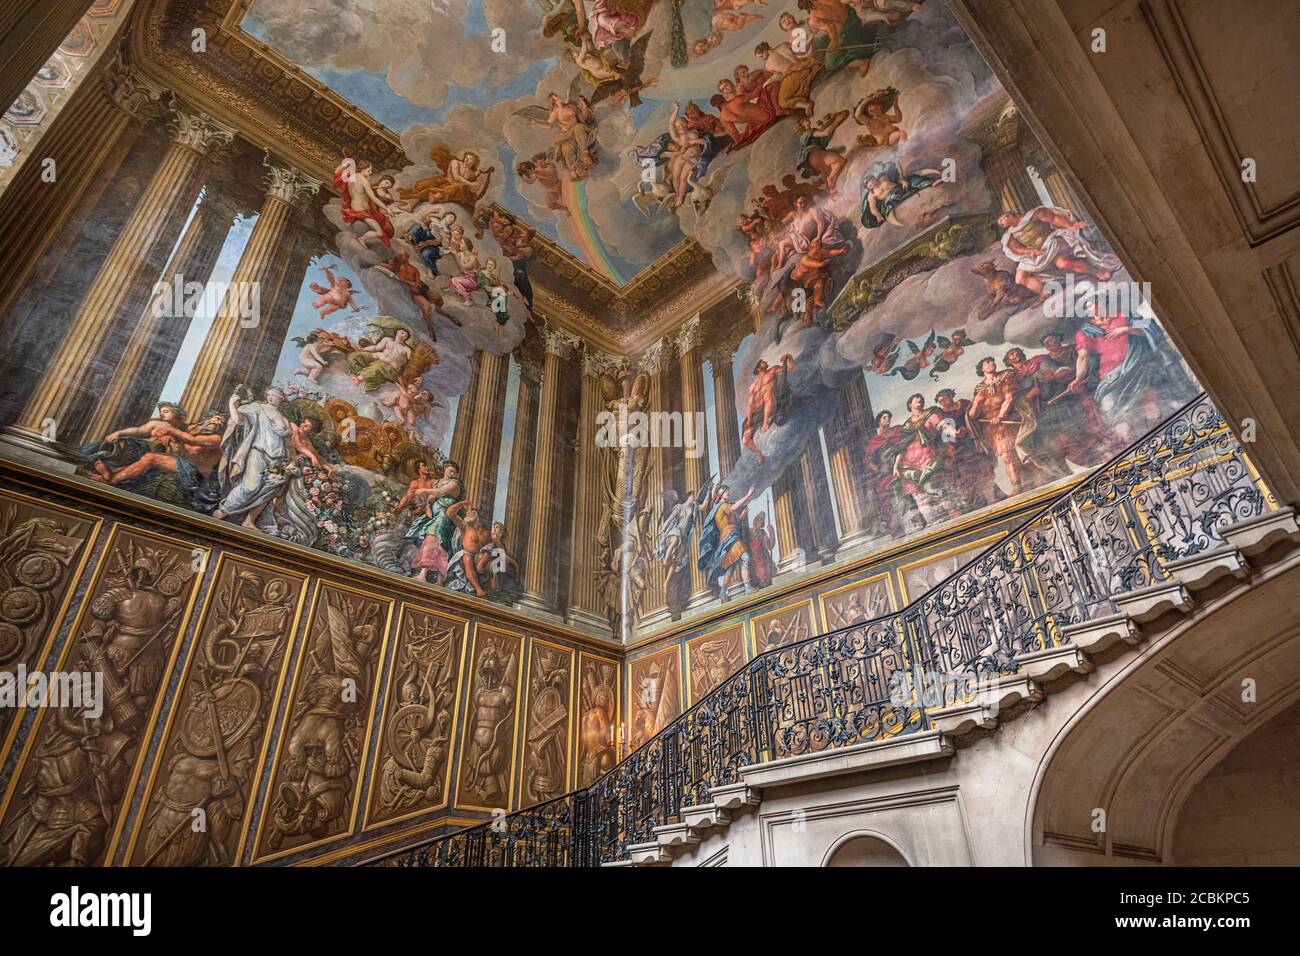 Angleterre, Richmond-upon-Thames. Hampton court Palace, l'escalier du roi avec une balustrade en fer forgé et une murale peinte par l'artiste italien Ant Banque D'Images